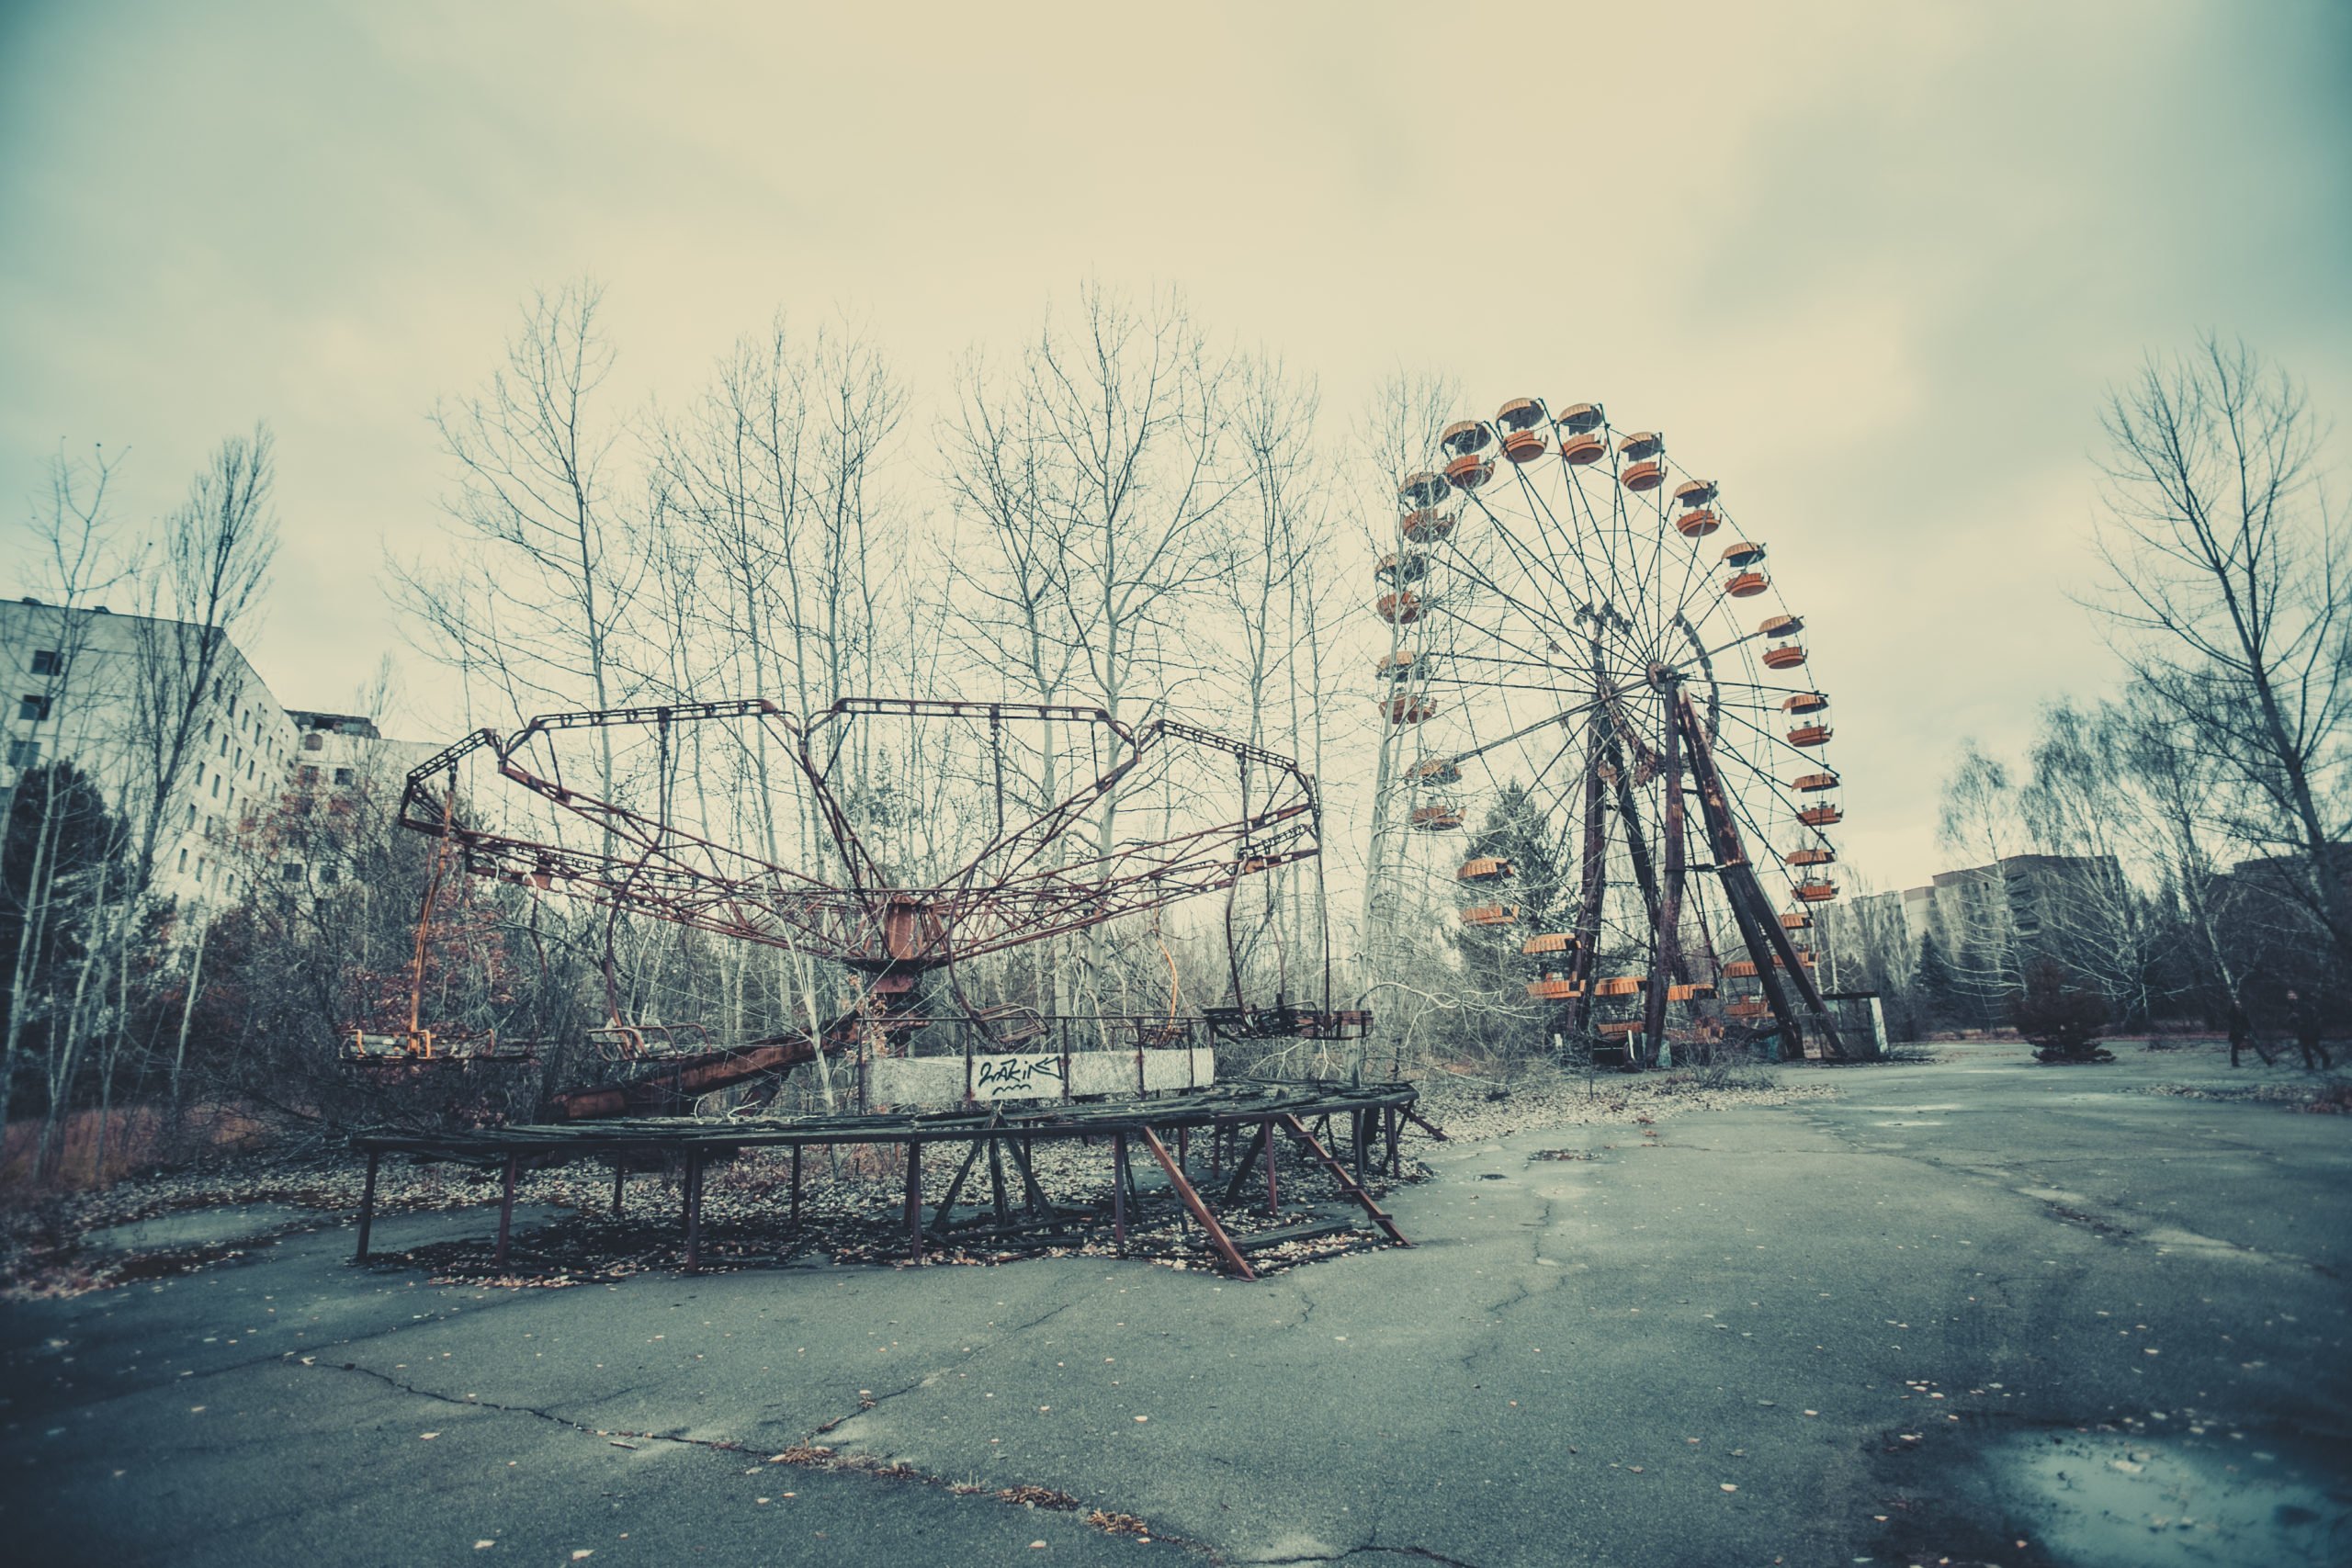 Chernobyl - By Kateryna Upit - Shutterstock